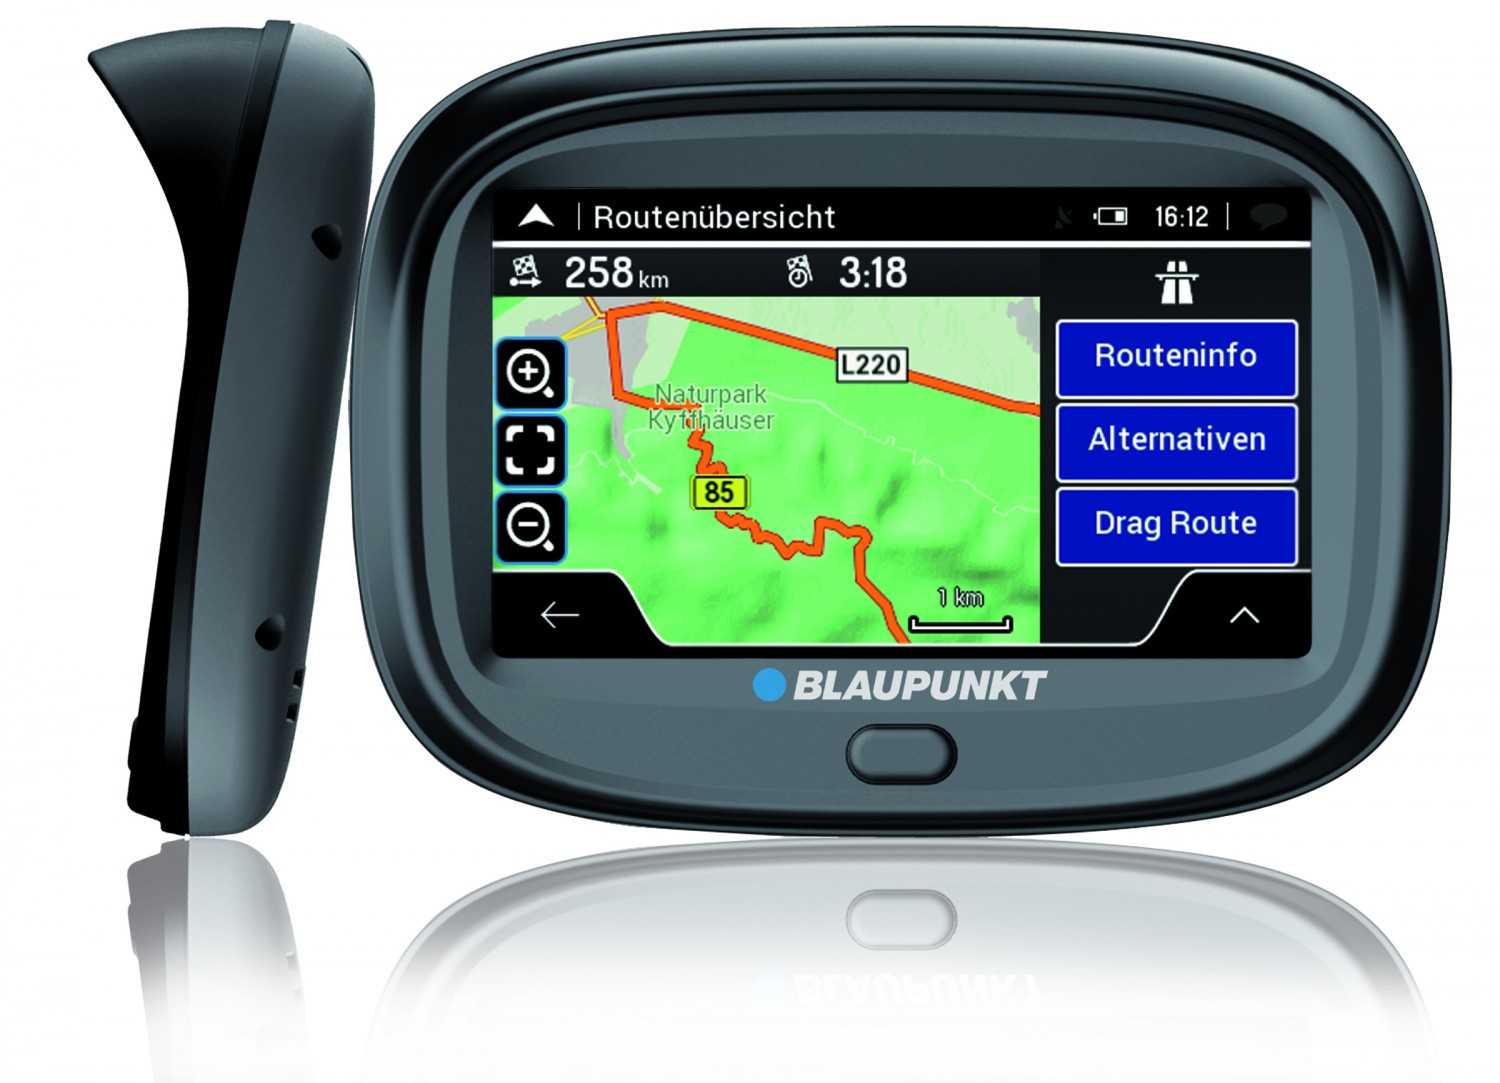 Car-Media Blaupunkt mit Navigationssystem speziell für Motorradfahrer - 3D-Ansichten und 43 Länder - News, Bild 1